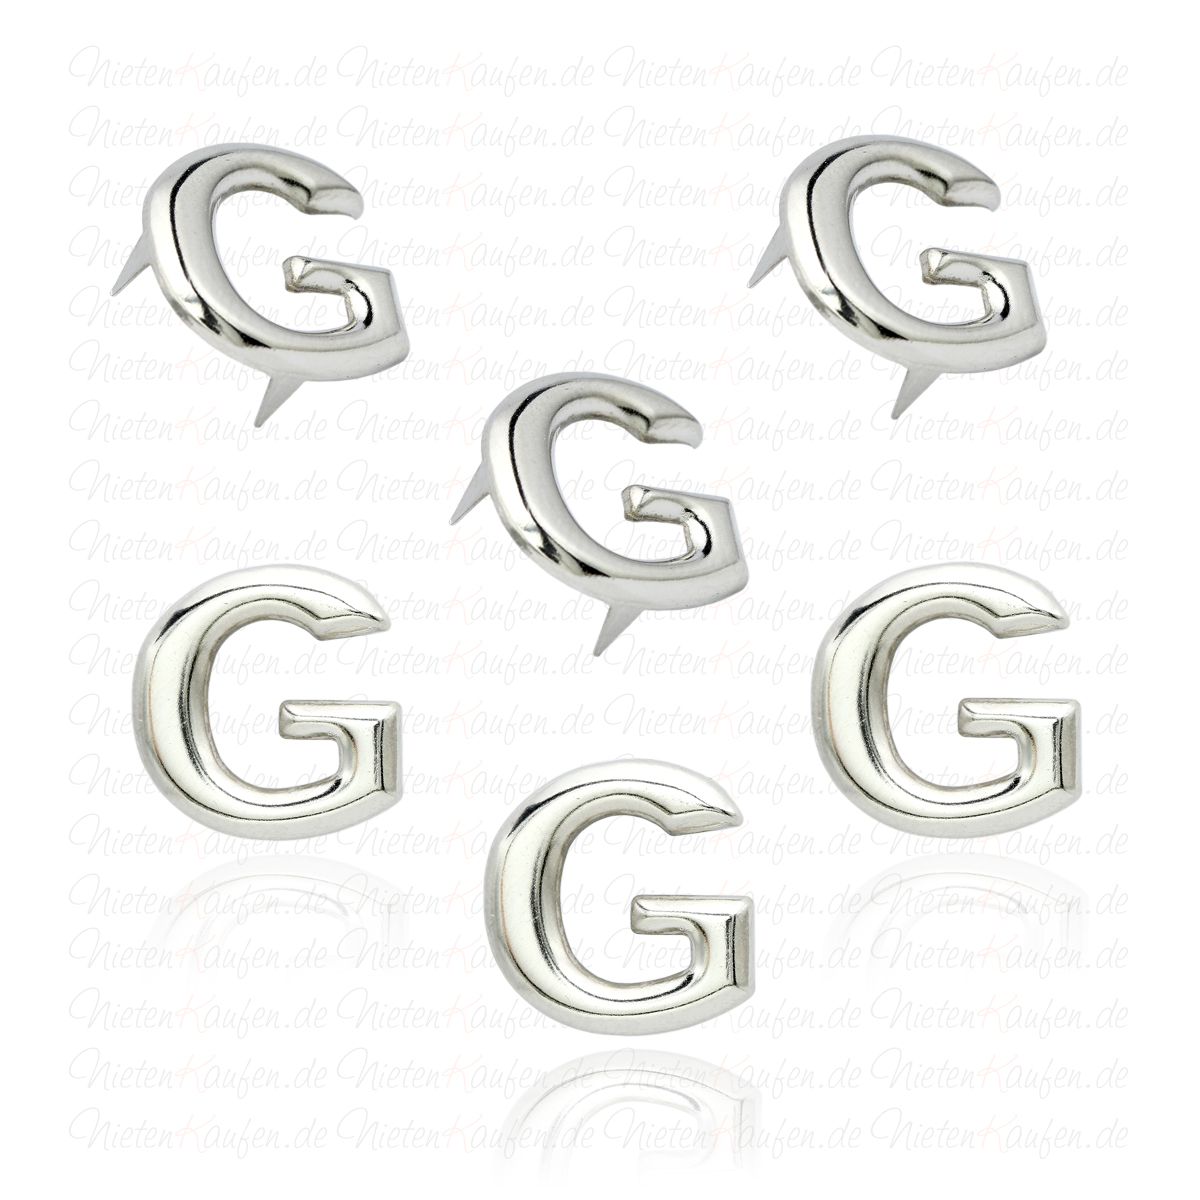 G - Metall Buchstaben Niete - Alphabet Nieten, Spezial Nieten Kaufen, Spezial Nieten, Nieten - Ziernieten